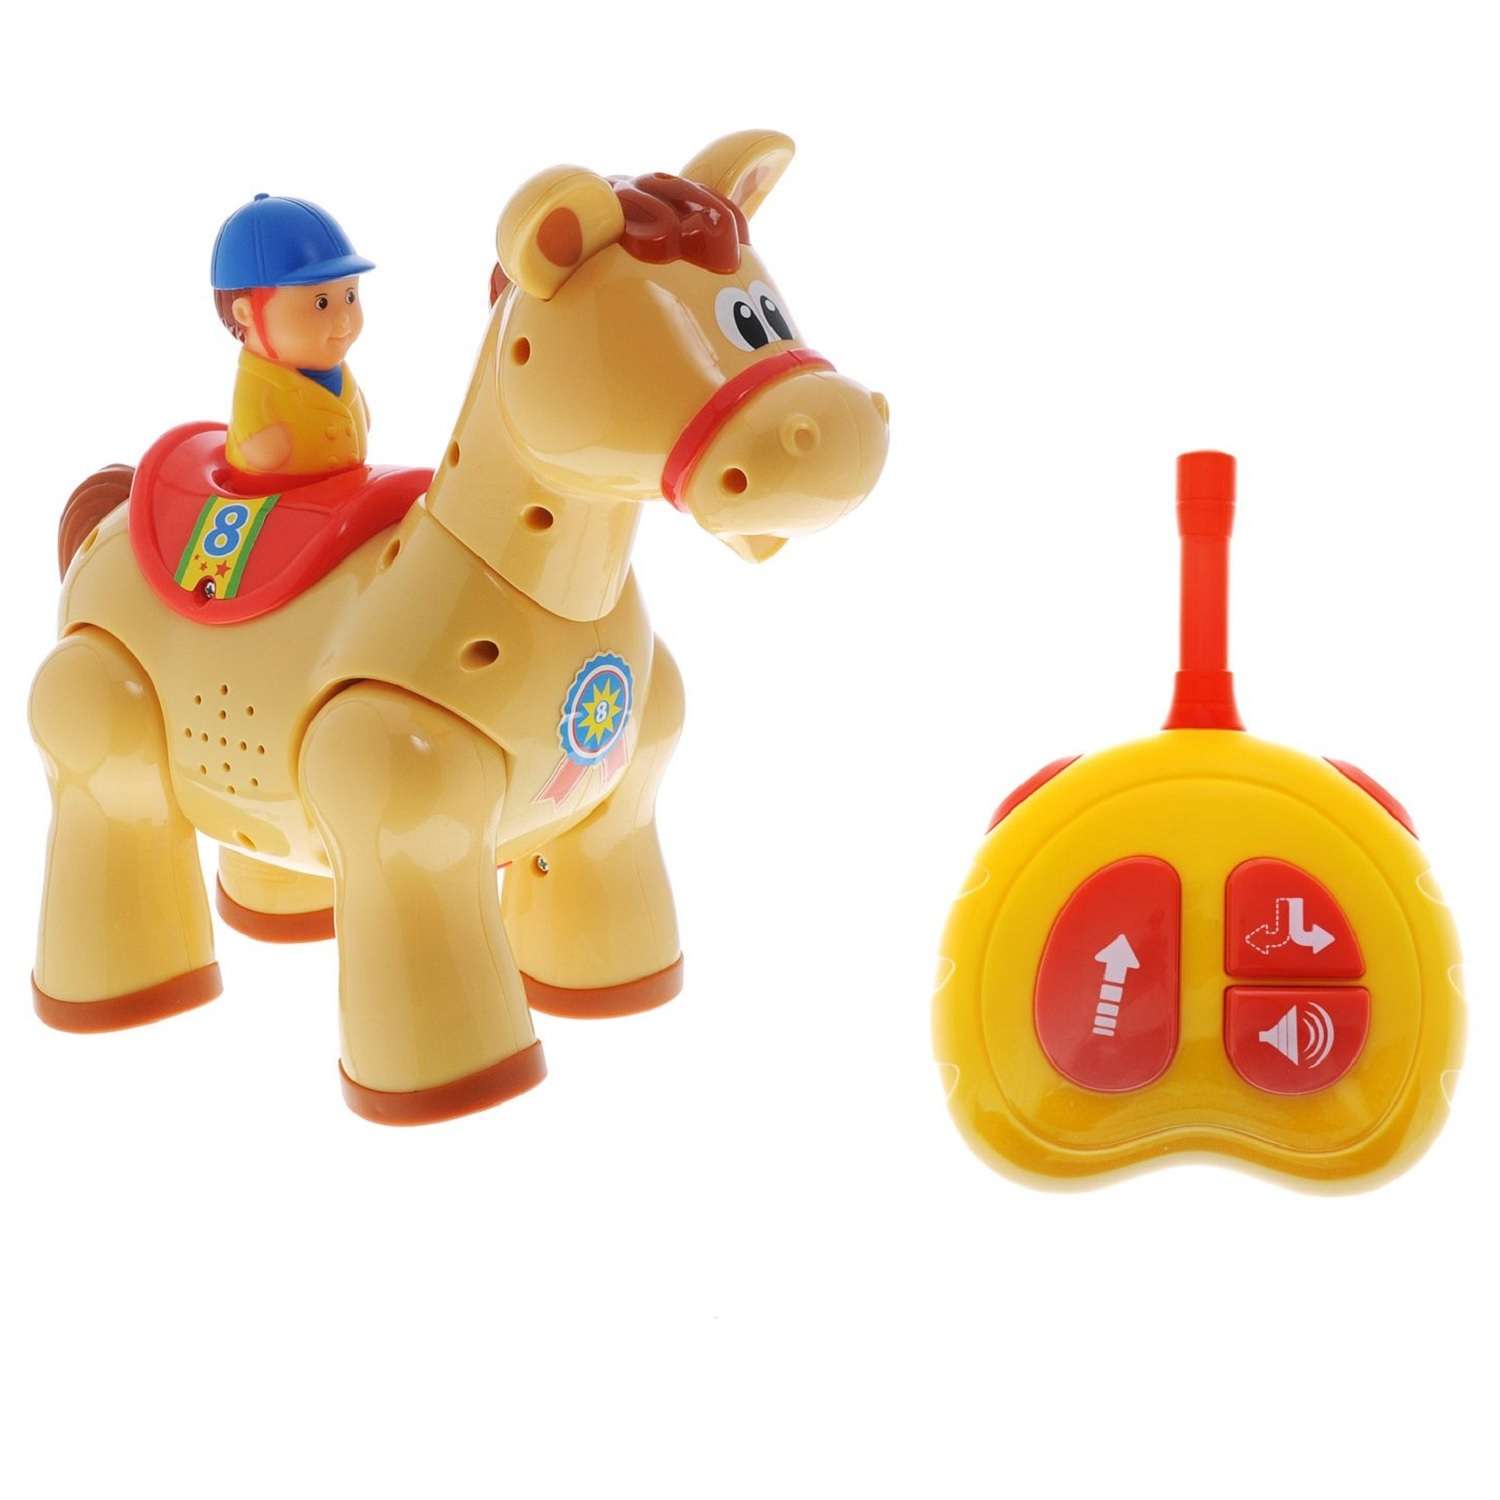 Развивающая игрушка Kiddieland Быстрая лошадка на д/у - фото 1